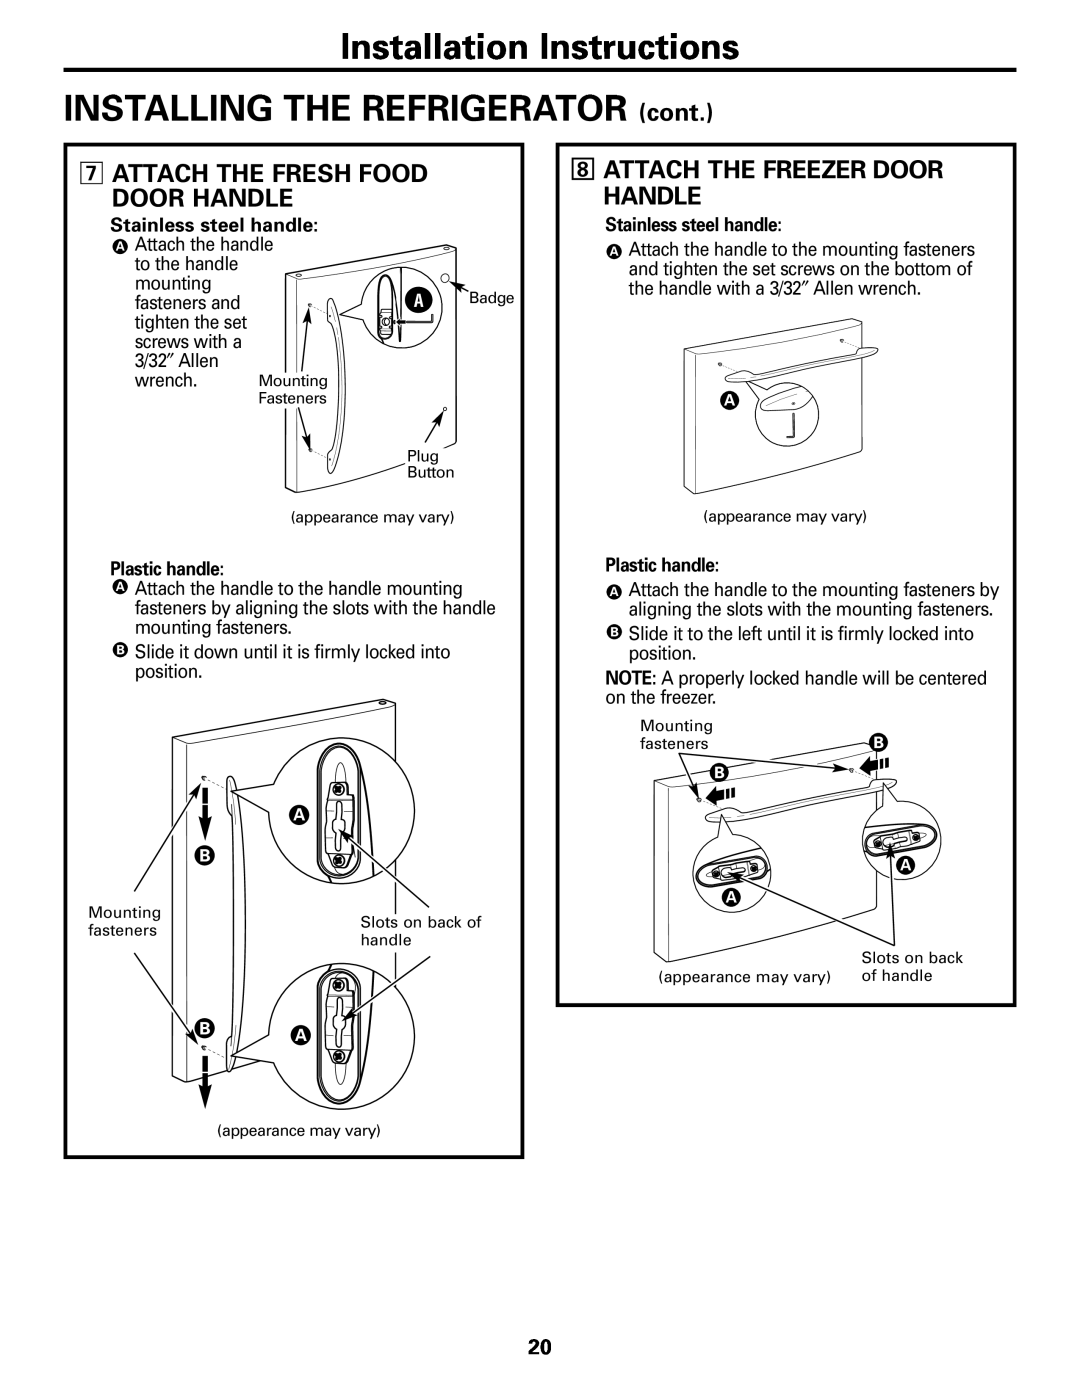 GE Monogram 22 Attach The Fresh Food Door Handle, Attach The Freezer Door Handle, Stainless steel handle, Plastic handle 